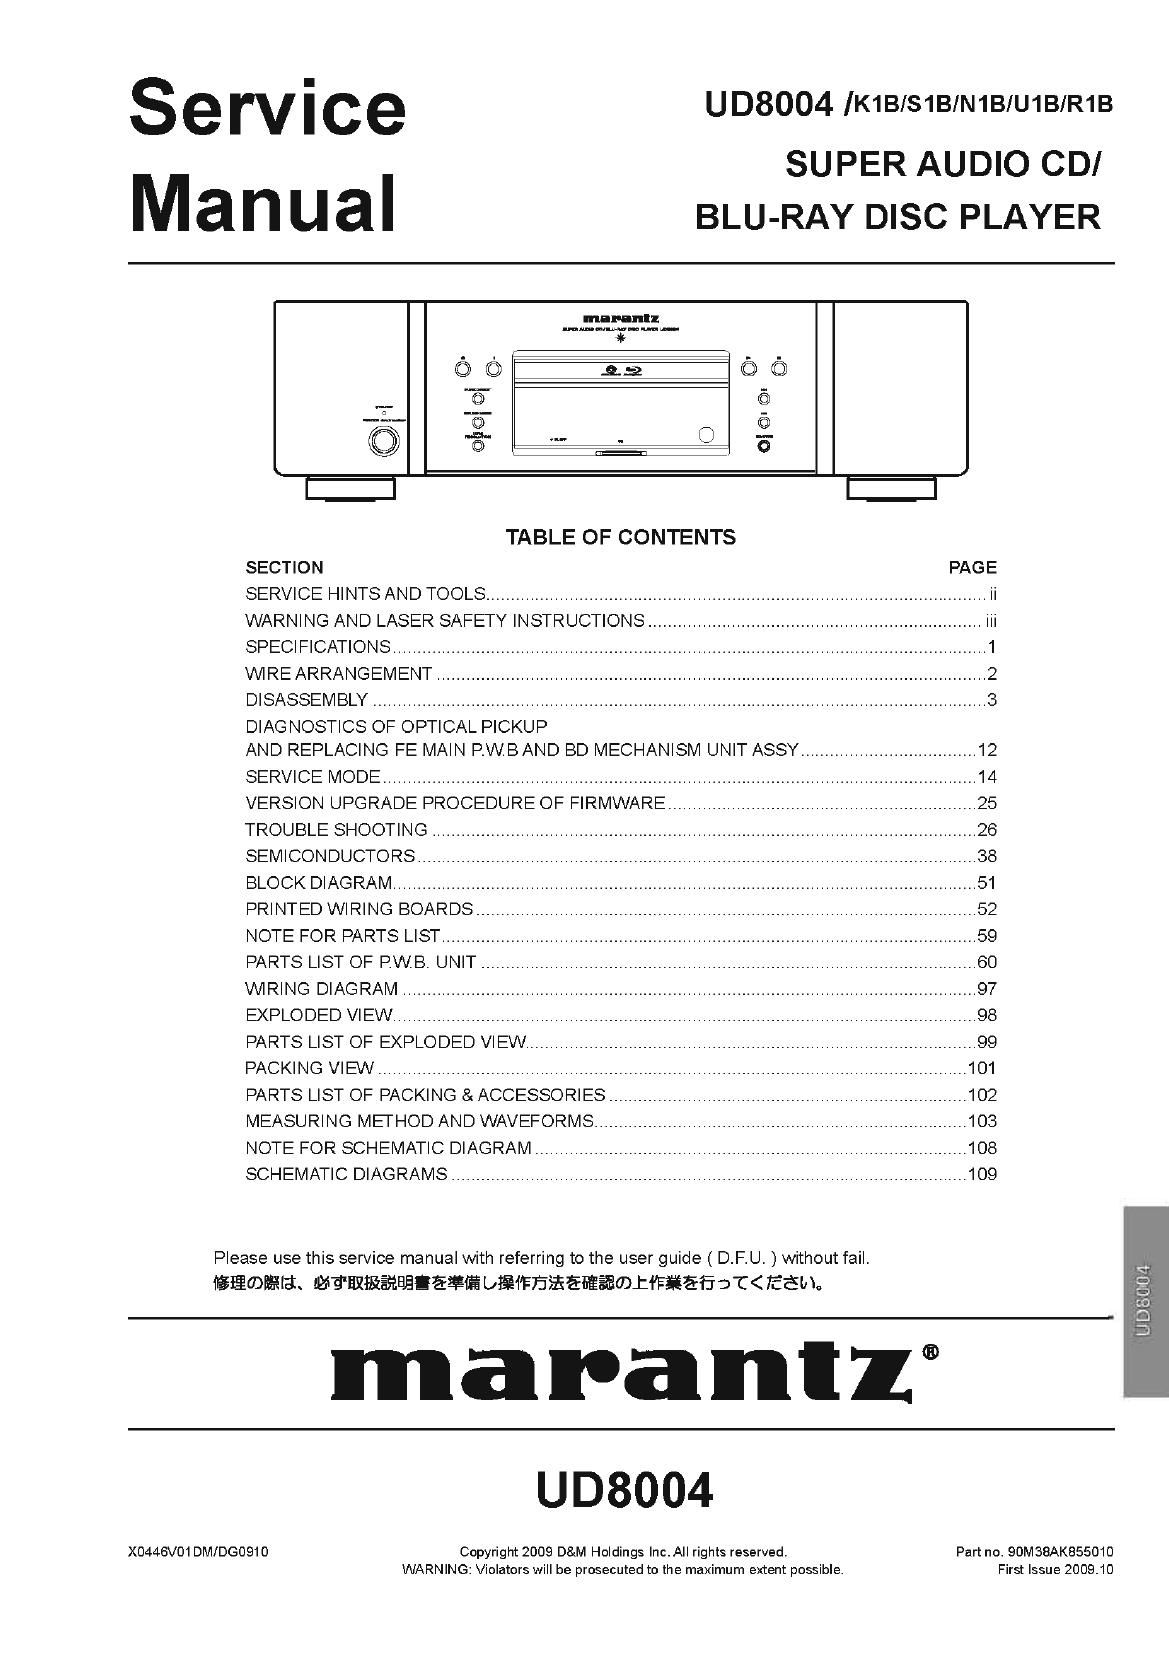 Marantz UD 8004 Service Manual